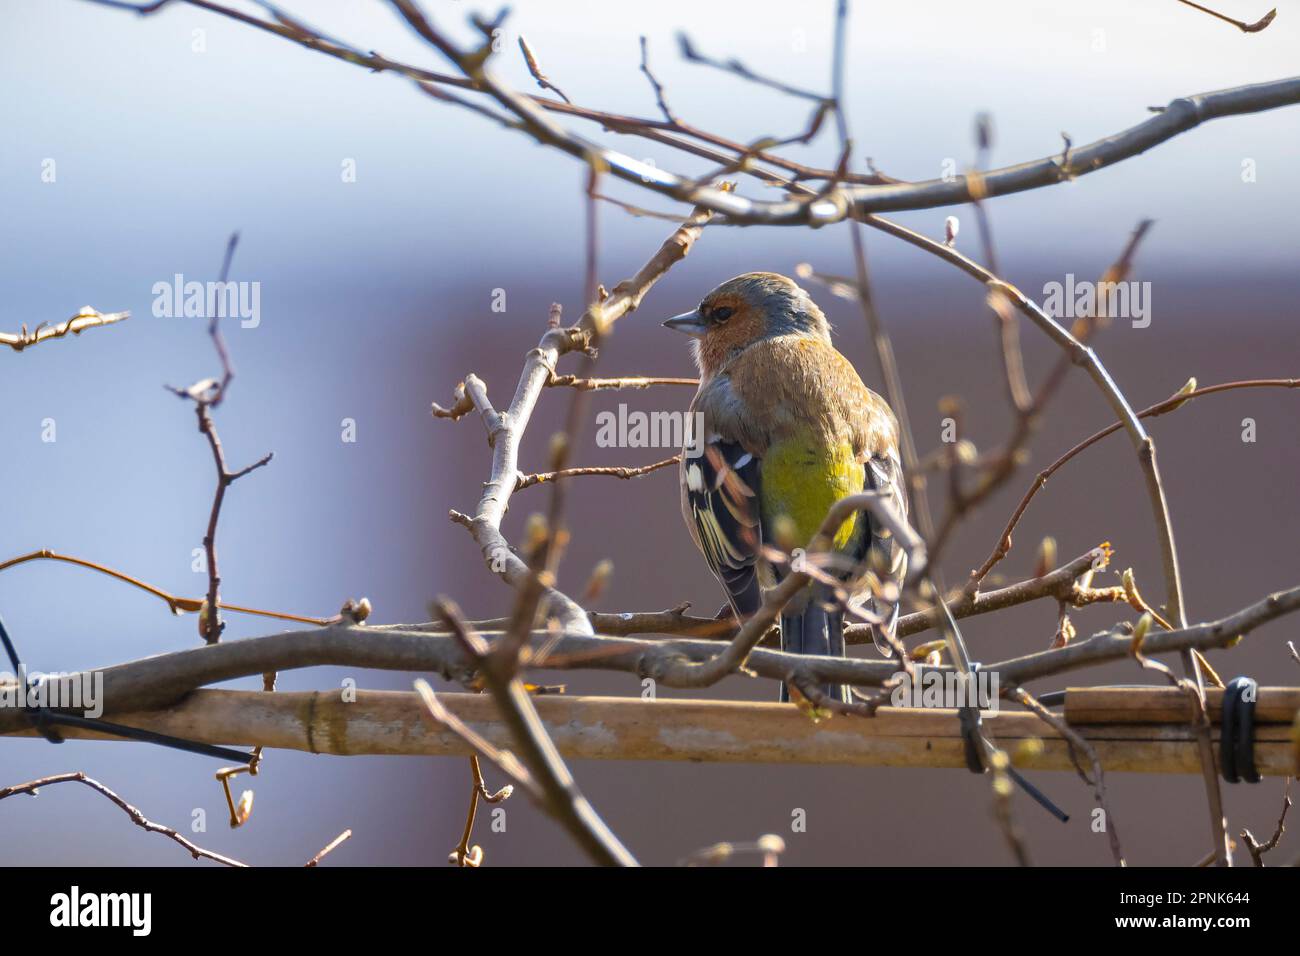 Nahaufnahme eines männlichen Buchfinkens, Fringilla coelebs, singend auf einem Baum in einem grünen Wald. Stockfoto